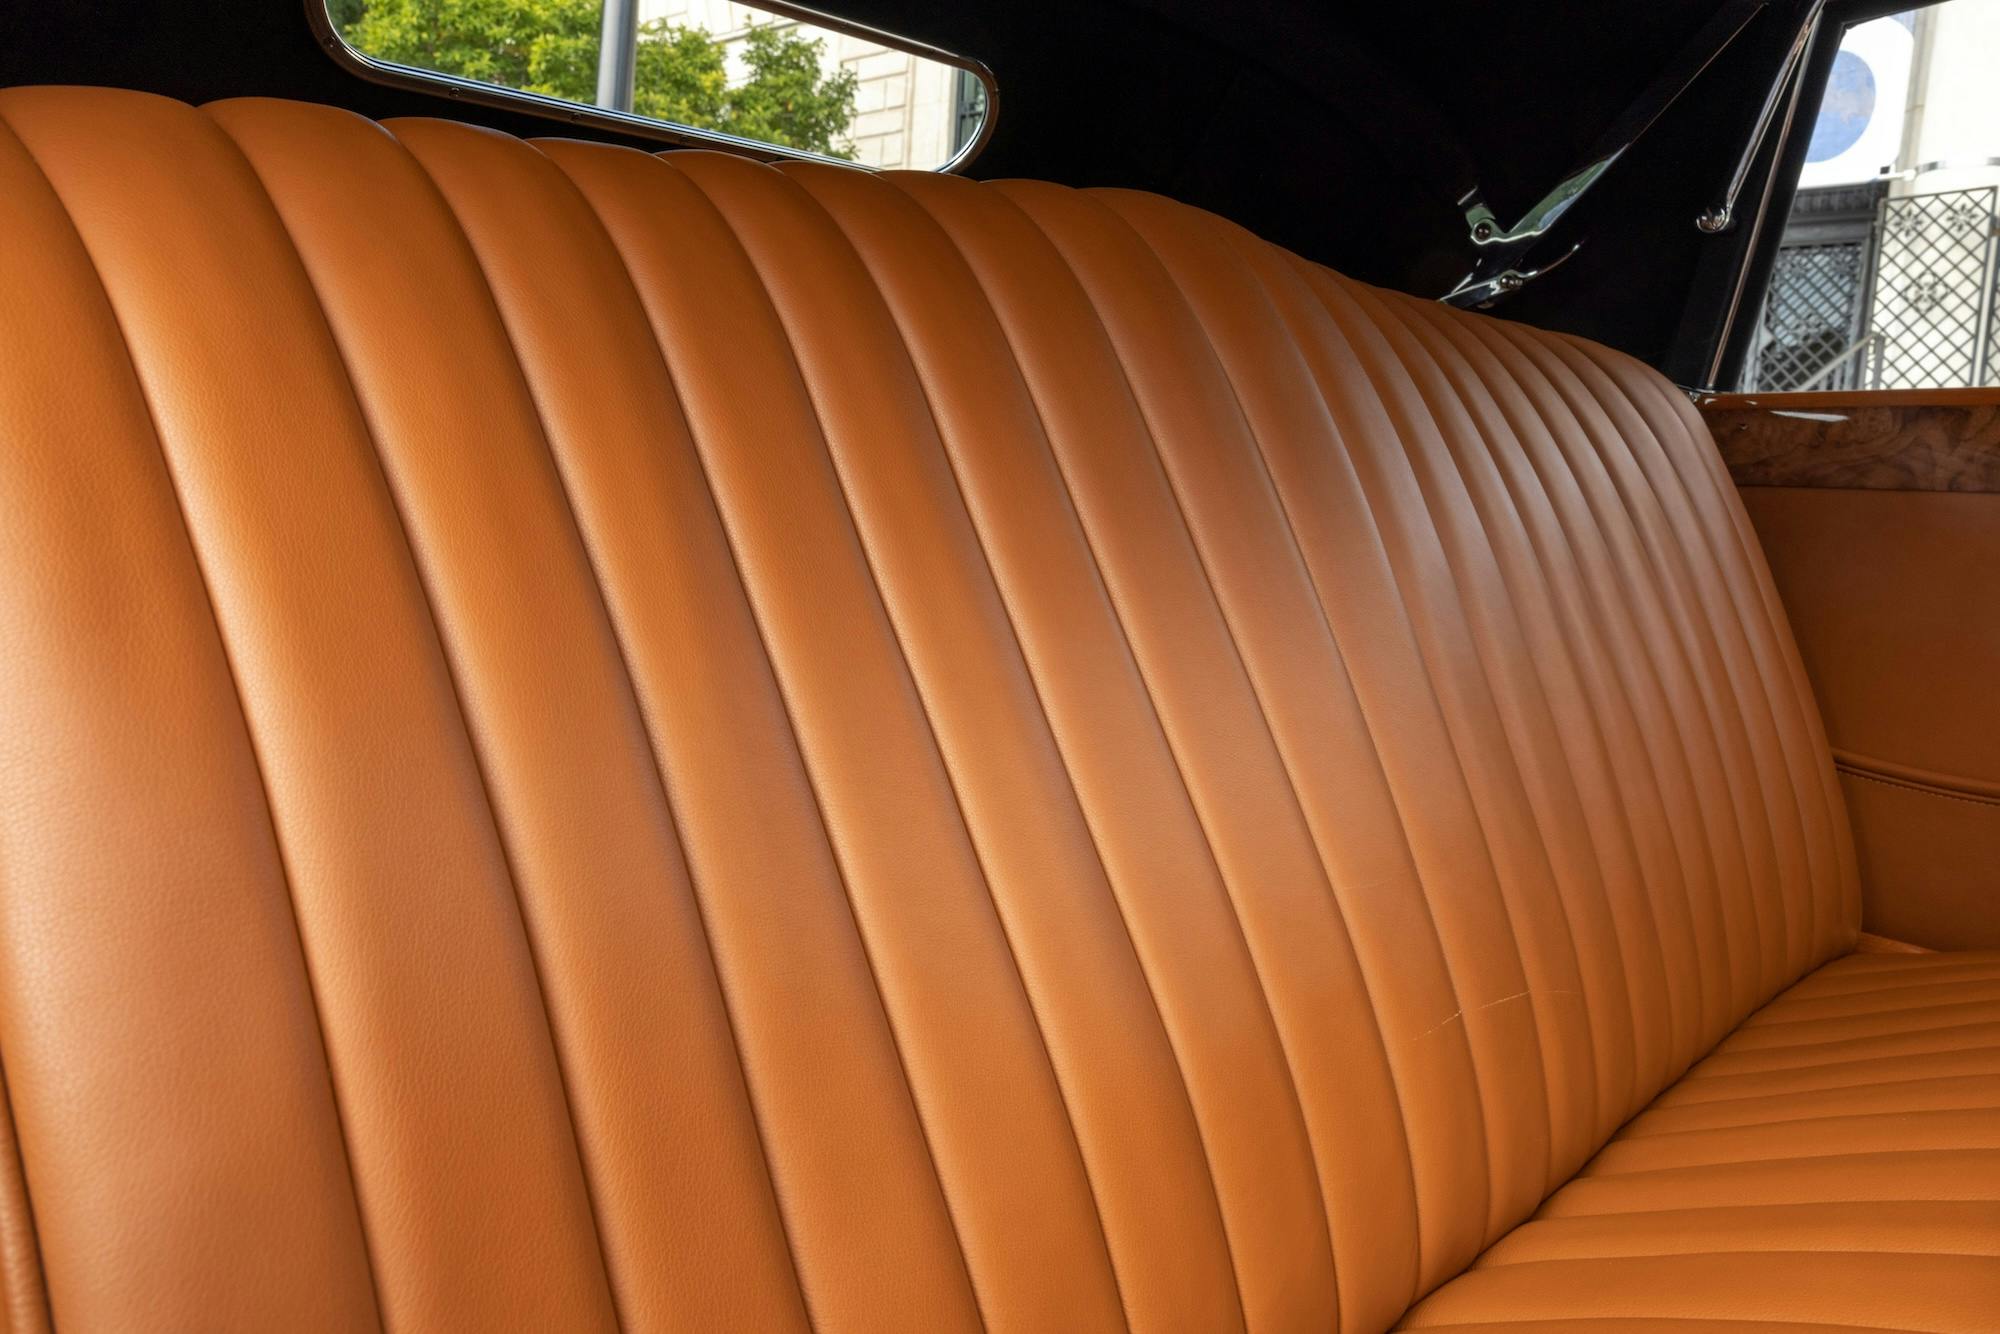 Delahaye Type 135 M interior leather seat